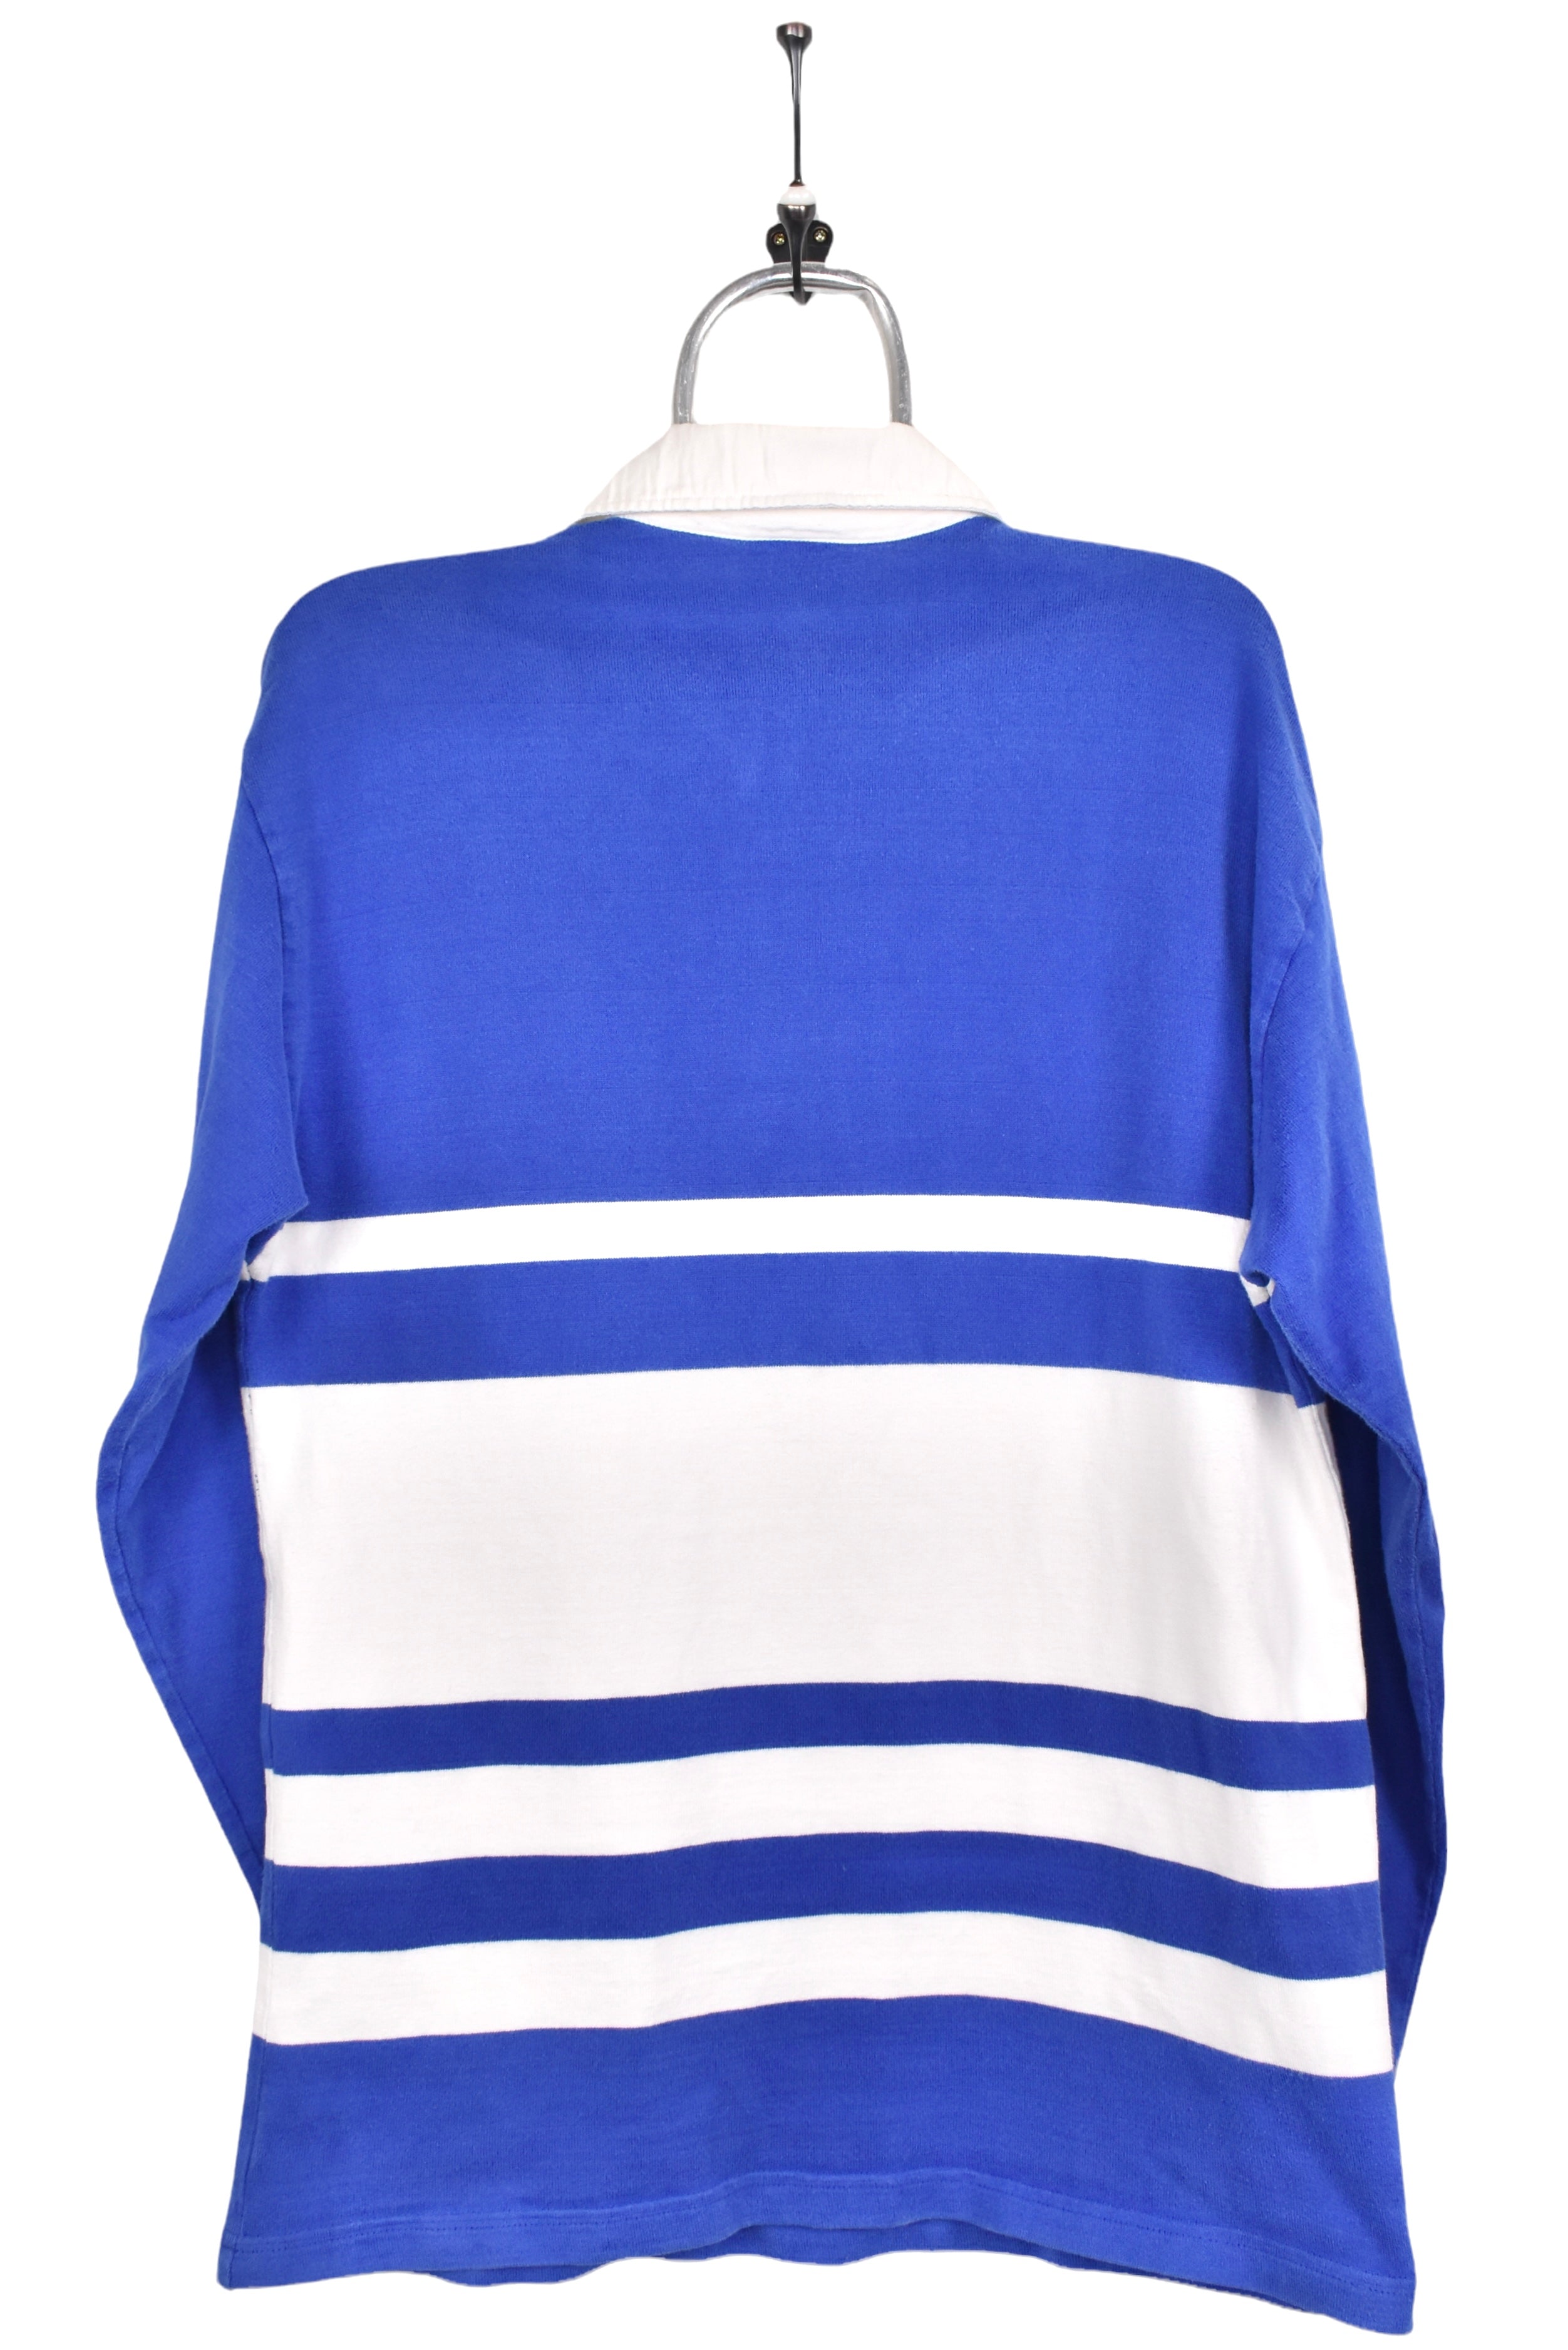 Vintage Adidas sweatshirt, blue embroidered rugby jumper - AU Medium ADIDAS